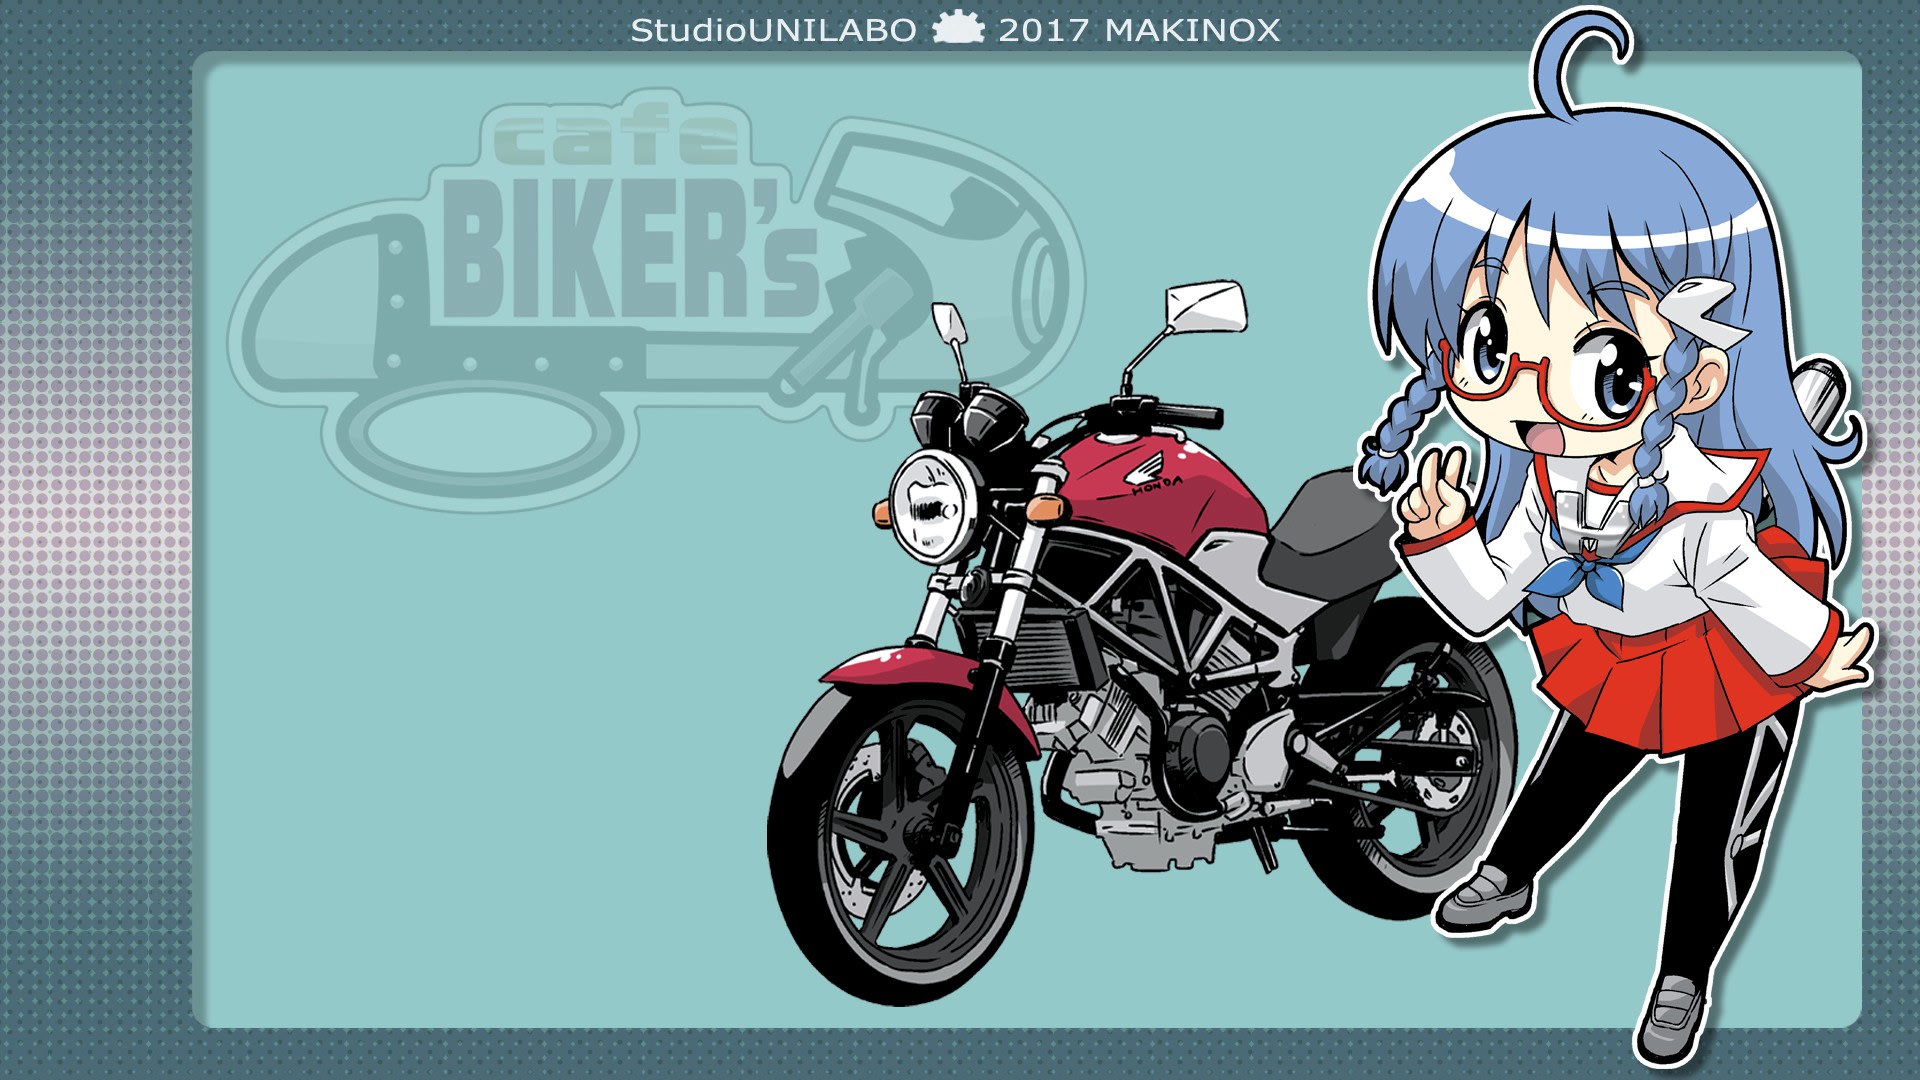 バイク擬人化マンガ Cafebiker S 壁紙放出 Studio Unilaboの Manga配信行為